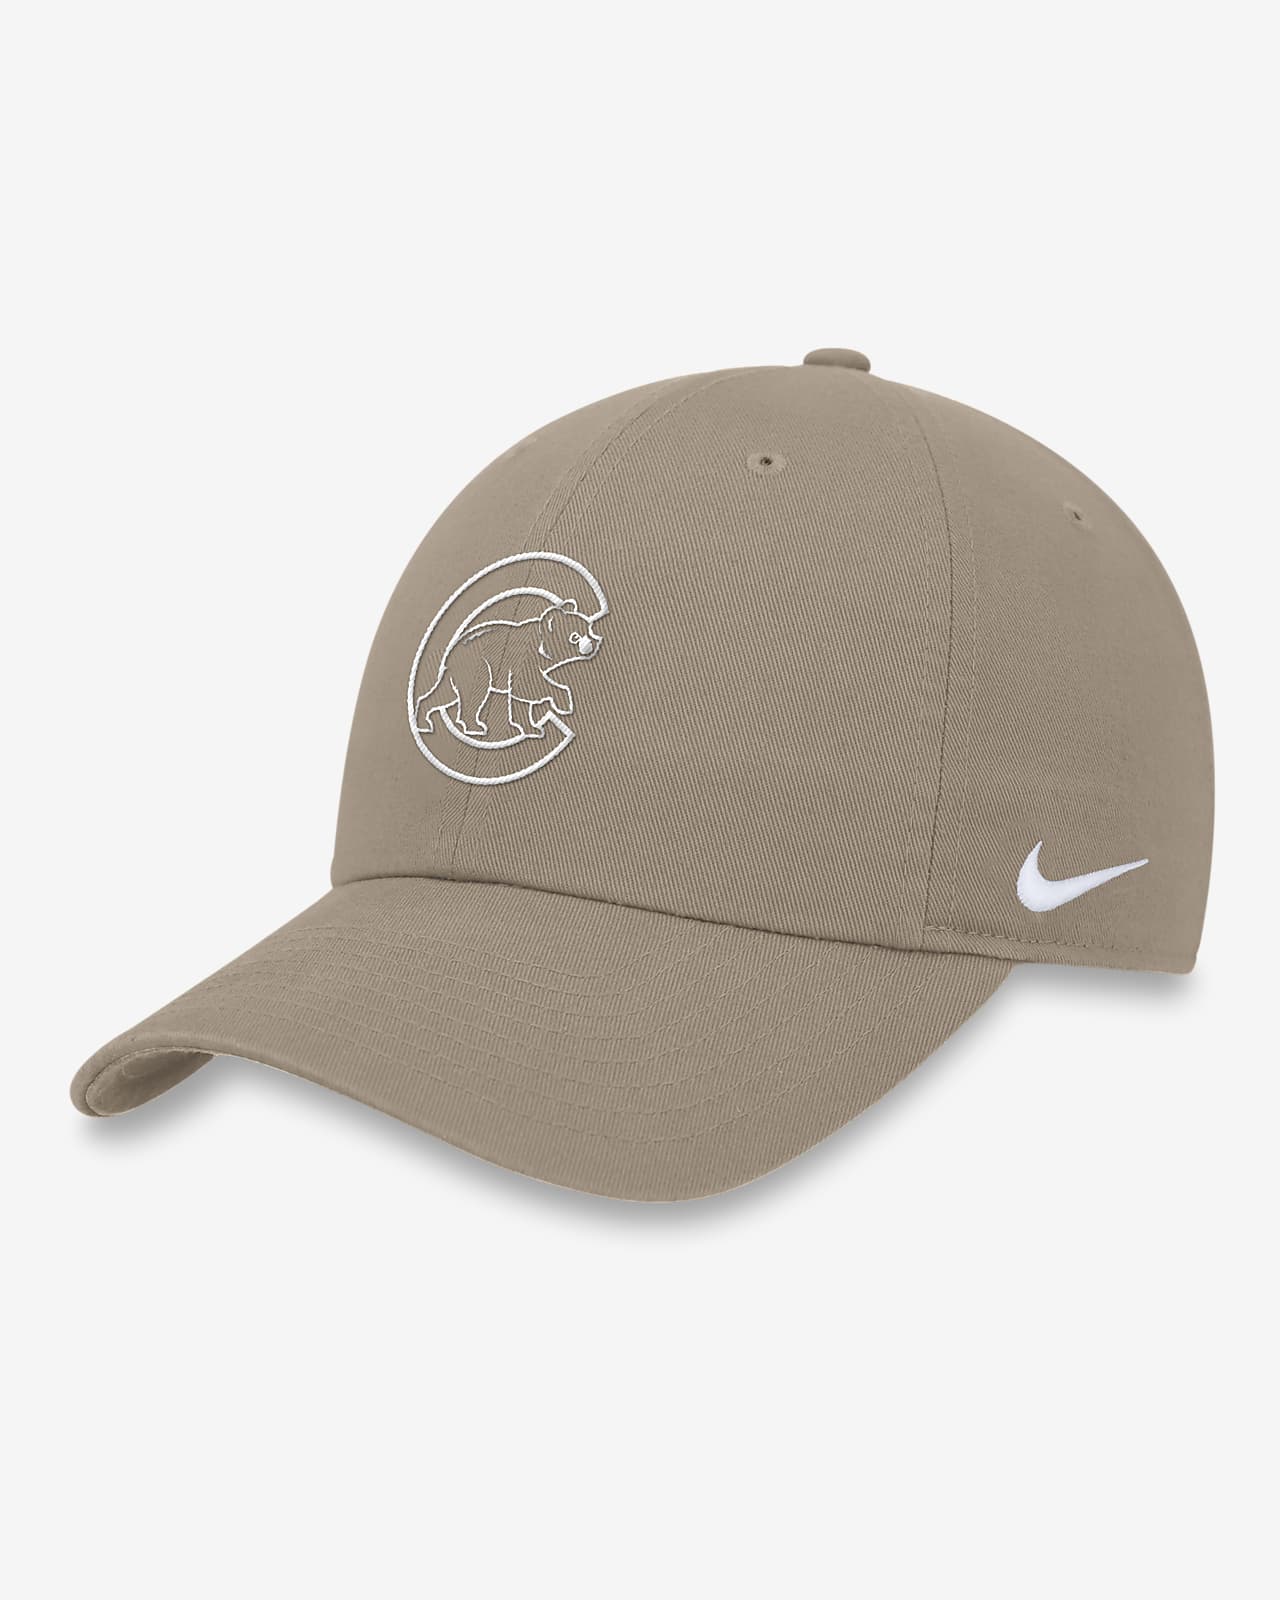 Chicago Cubs Club Men's Nike MLB Adjustable Hat